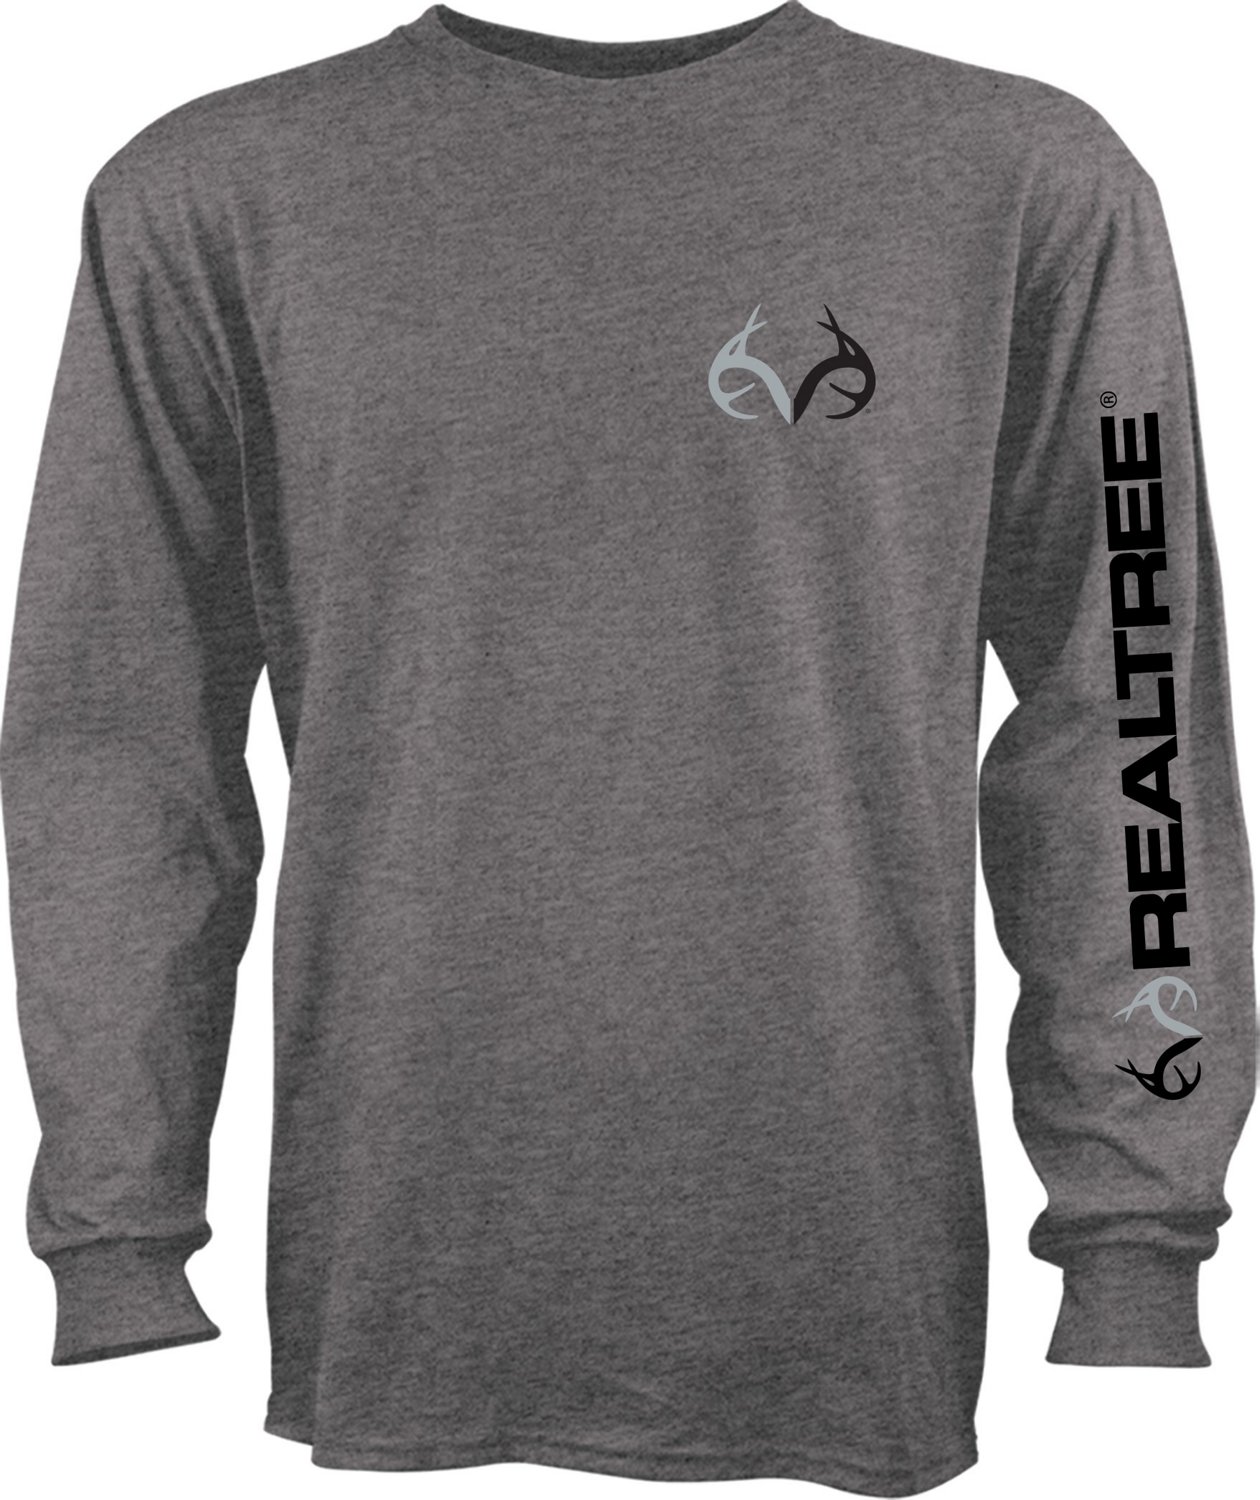 Realtree, Shirts, Realtree Mens Long Sleeve Hooded Fishing Shirt